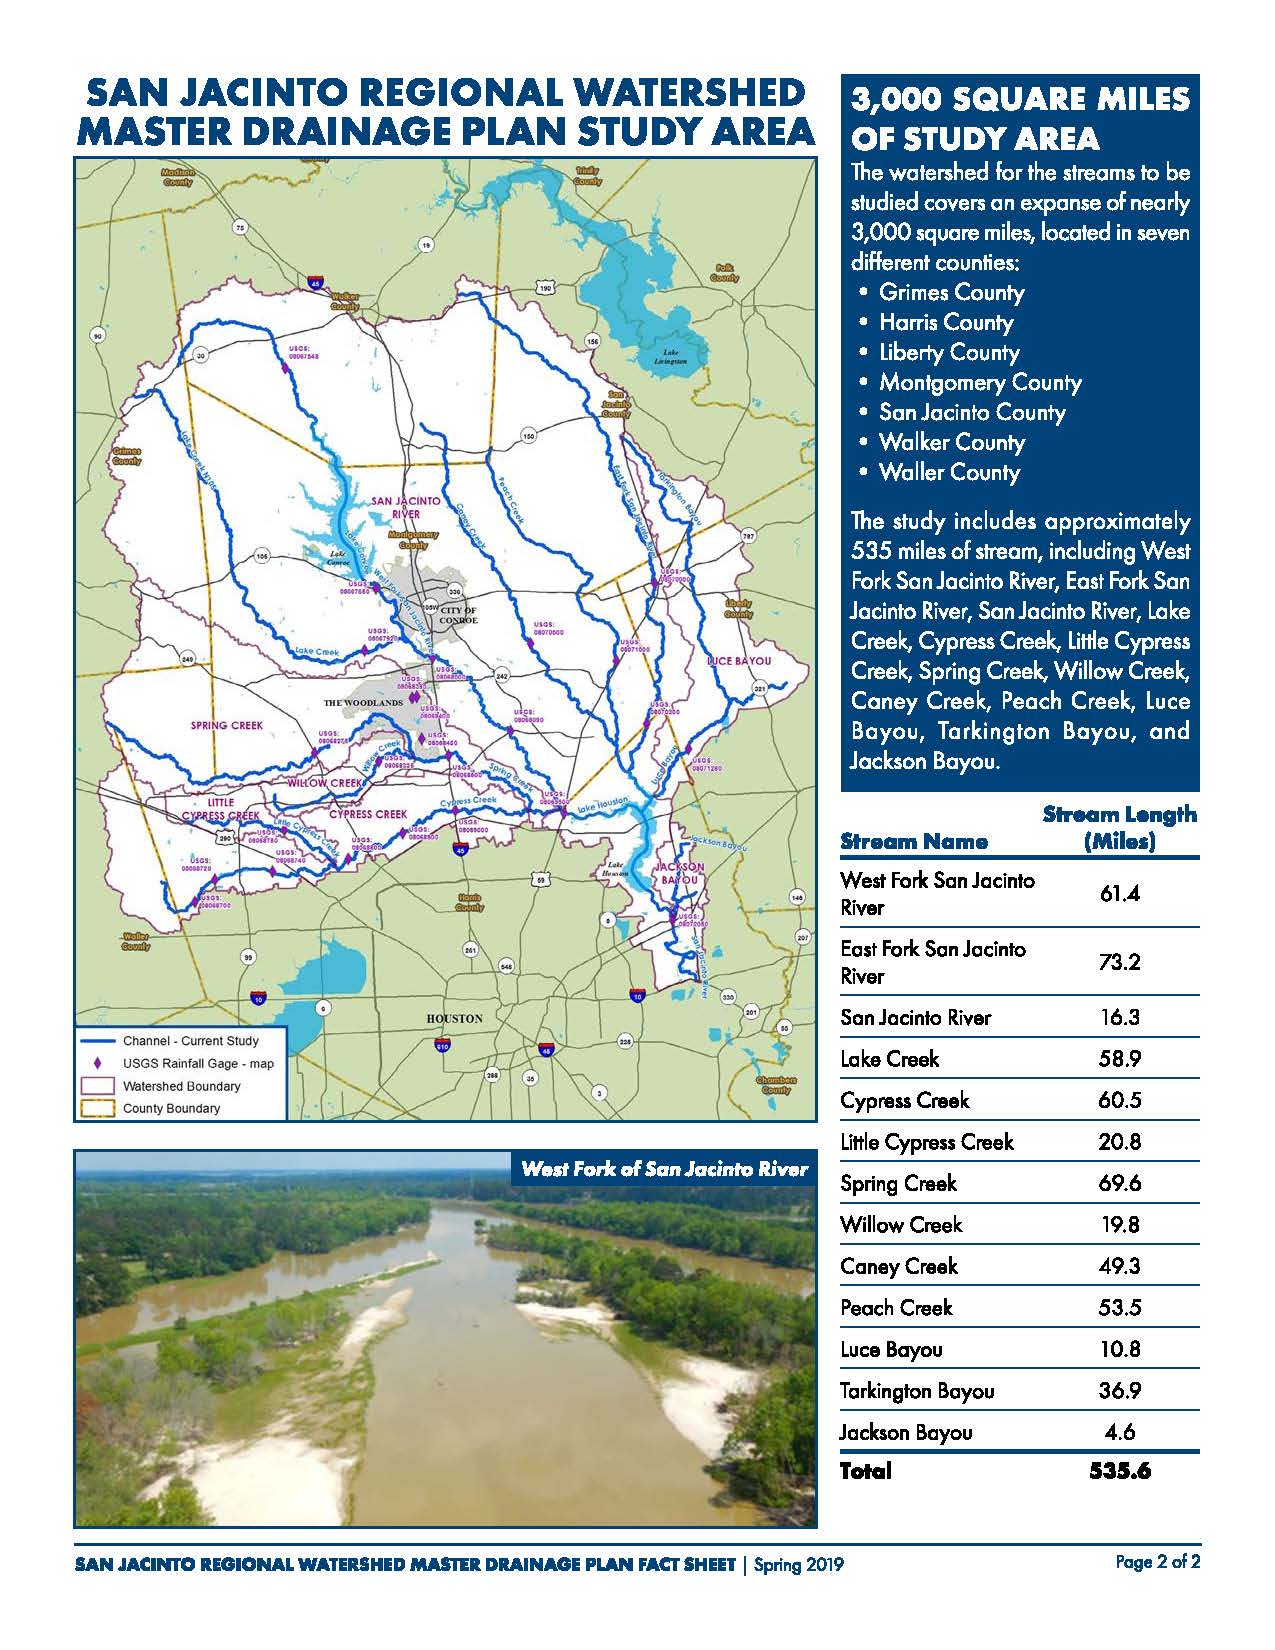 SJ Regional Watershed Master Drainage Plan Fact Sheet_Spring 2019_Page_2